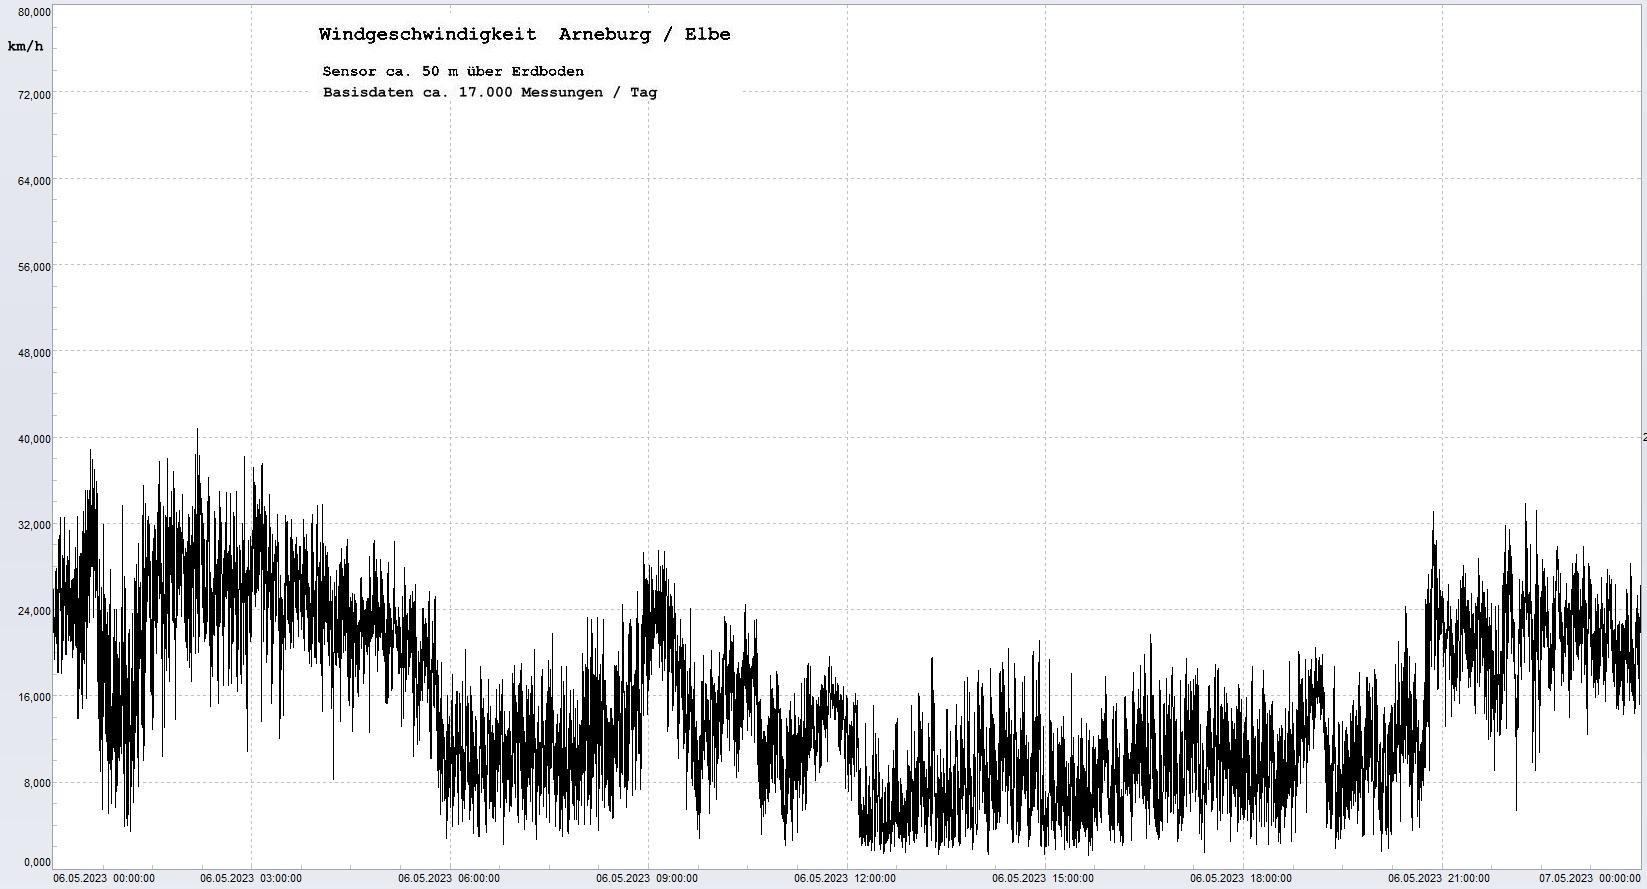 Arneburg Tages-Diagramm Winddaten, 06.05.2023
  Diagramm, Sensor auf Gebude, ca. 50 m ber Erdboden, Basis: 5s-Aufzeichnung